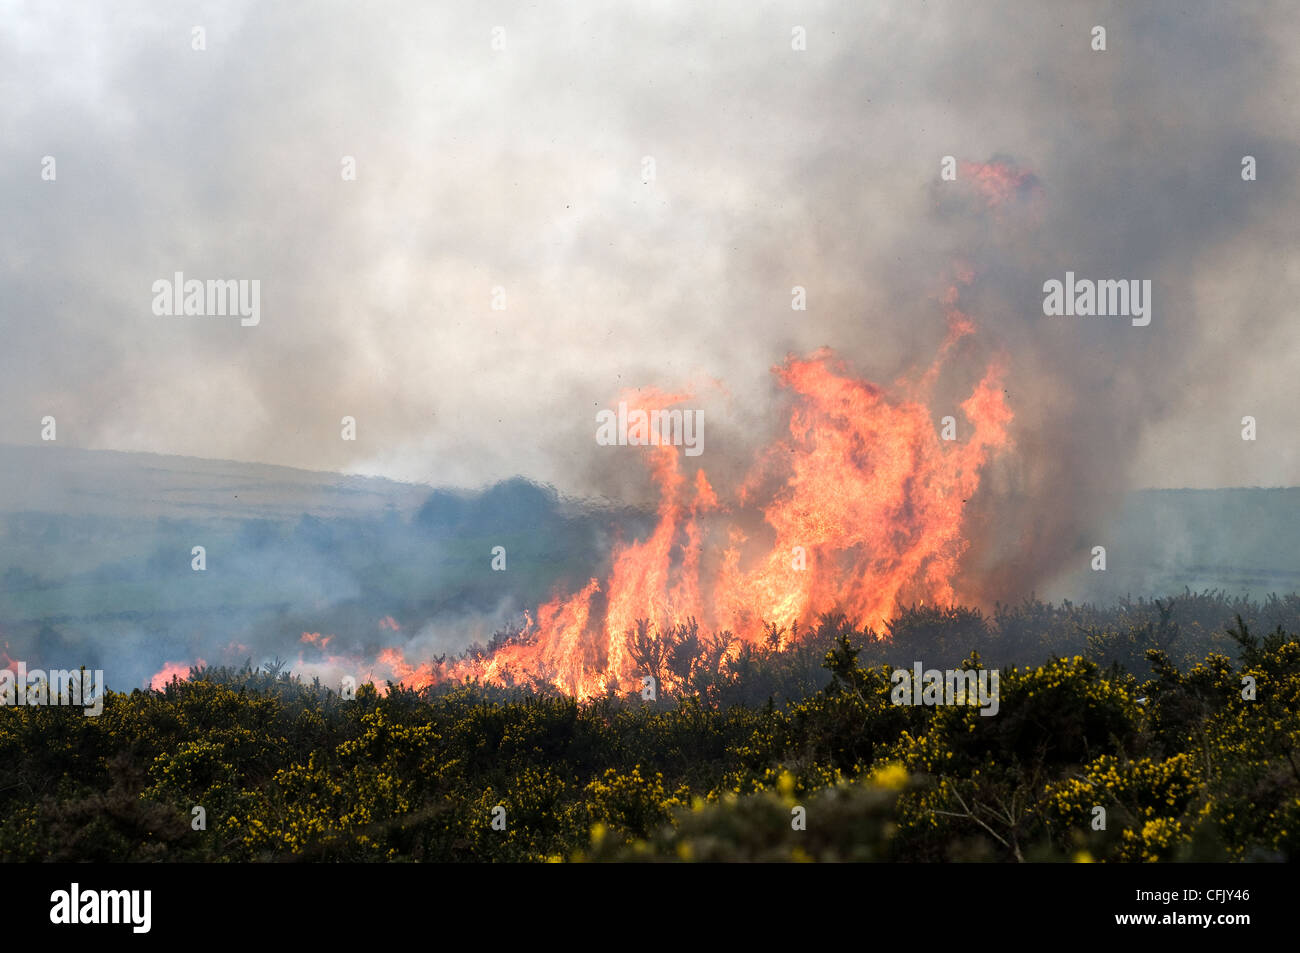 swaling gorse on Dartmoor,Burning gorse and bracken on Dartmoor,ash, brush, burn, burnt, bush, destruction,Bush fire,Controlled burning on Dartmoor Stock Photo